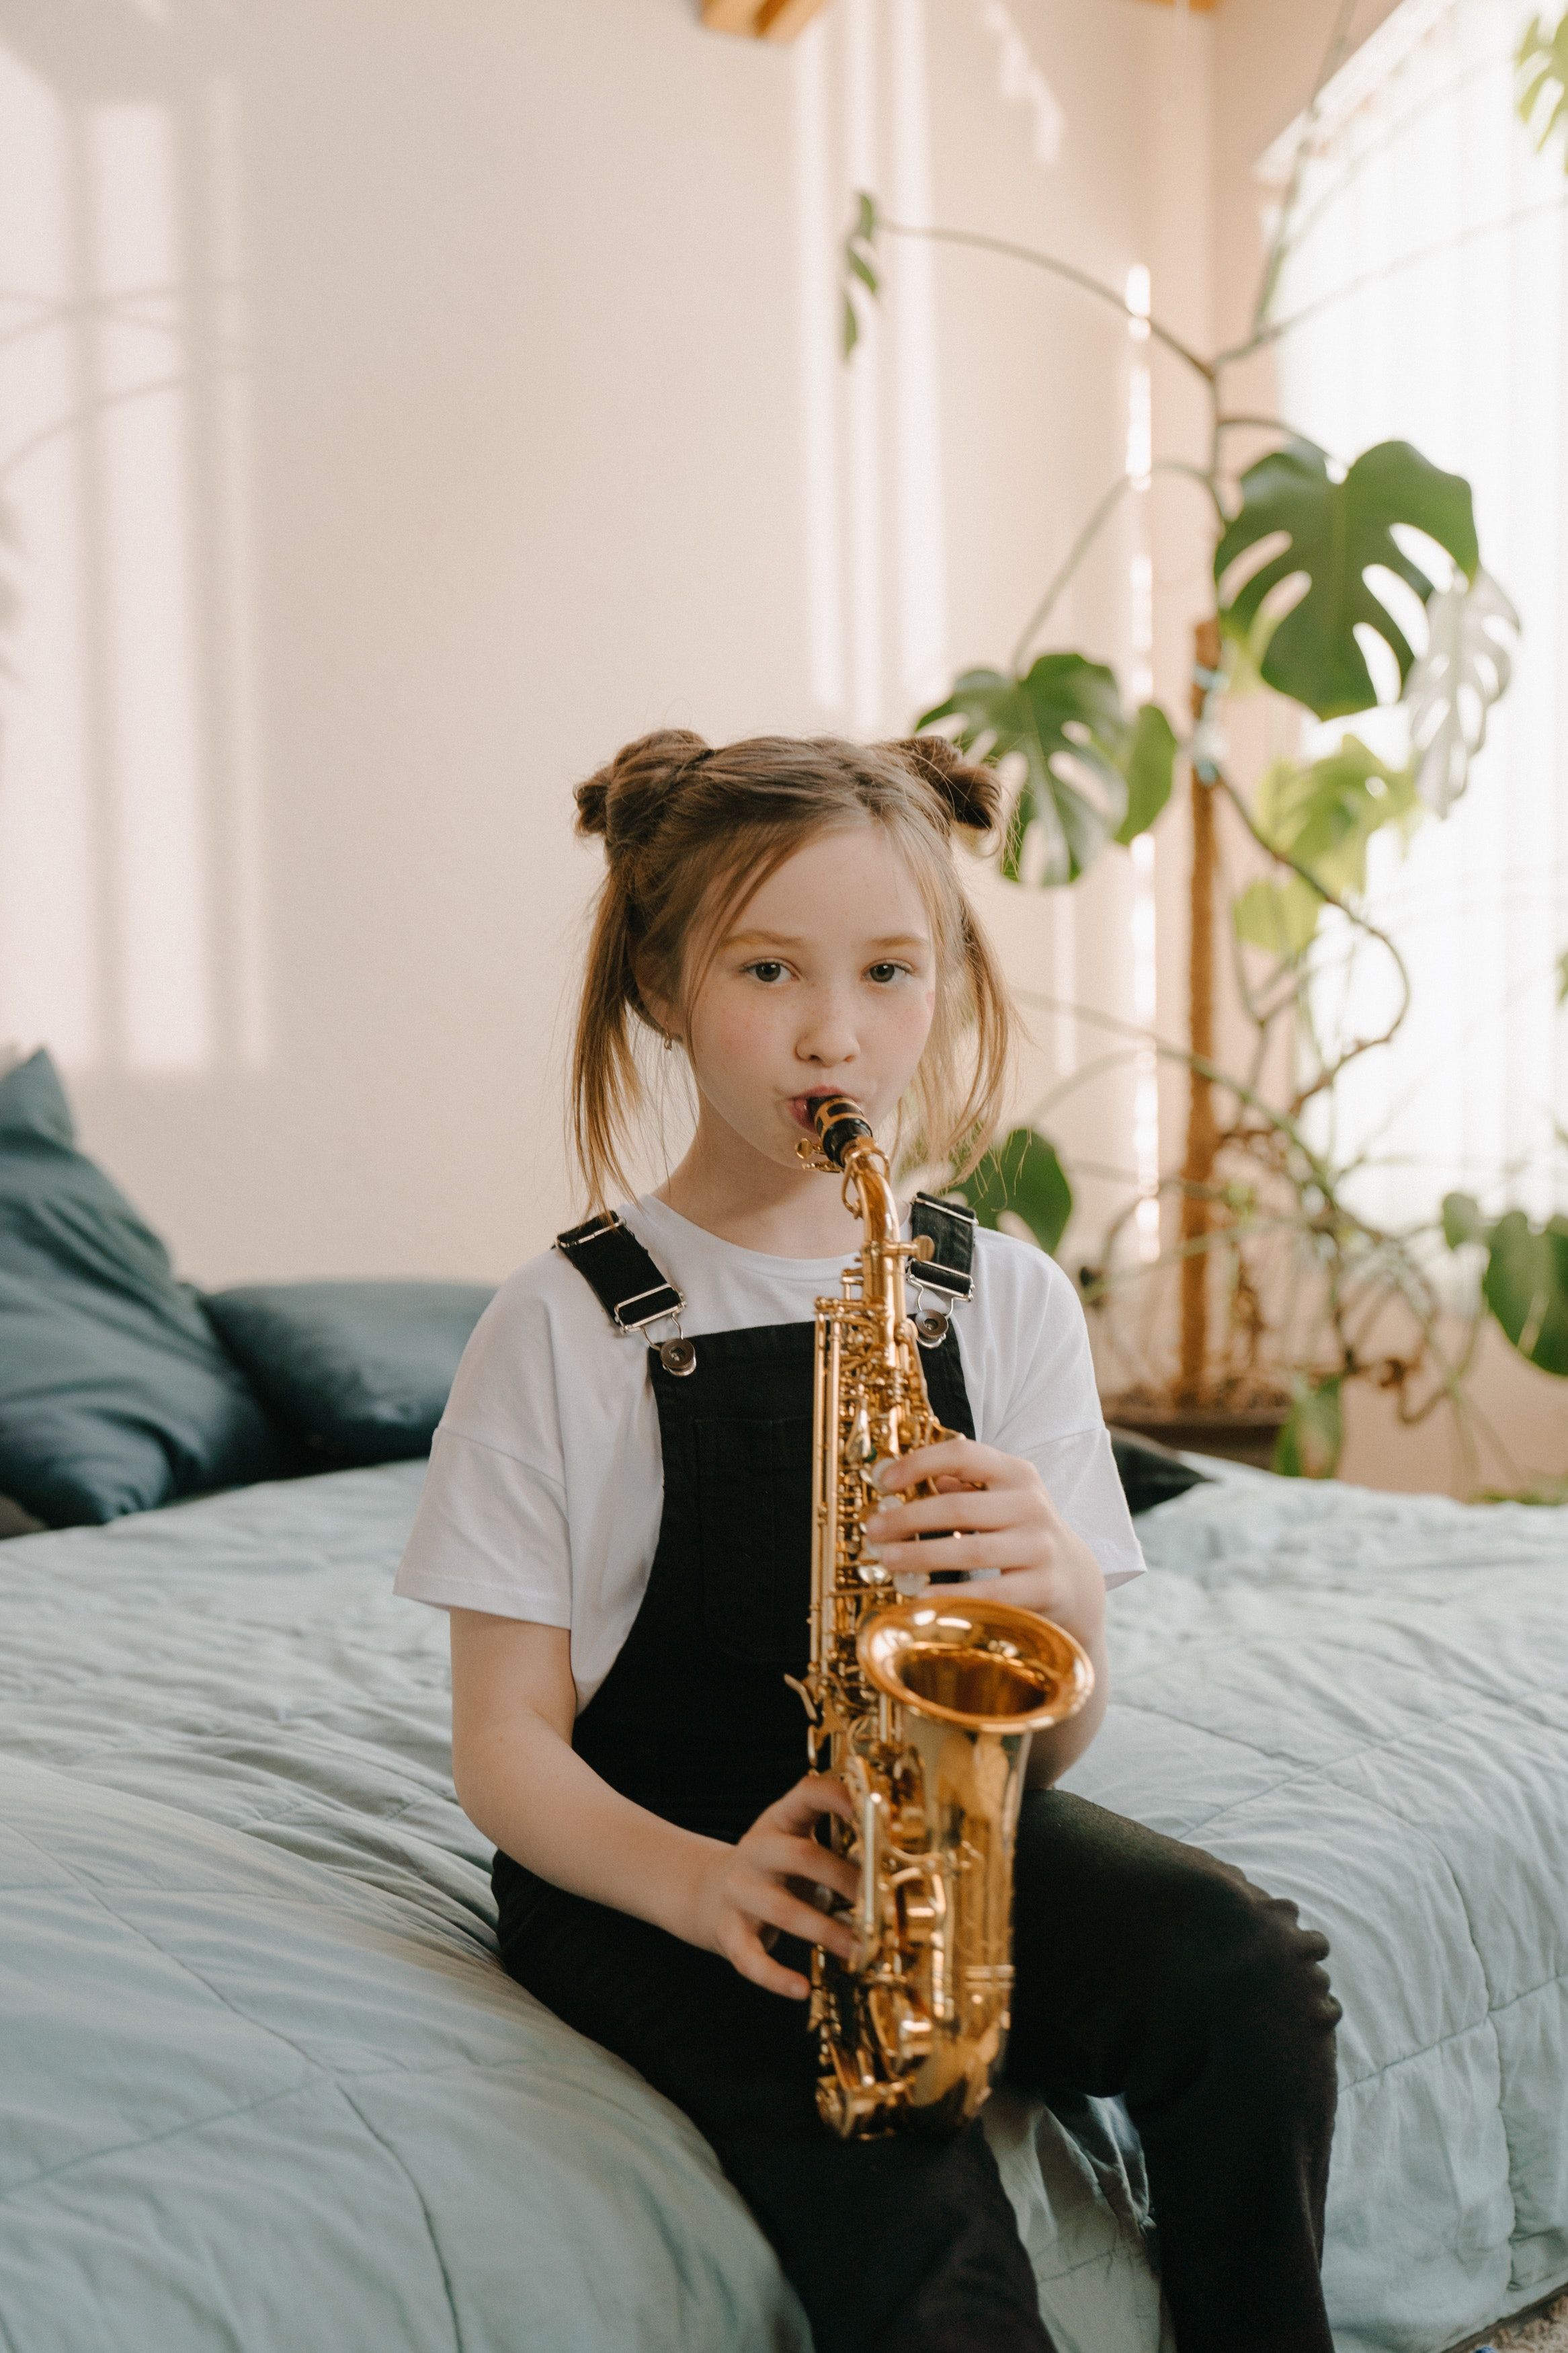 Playing saxophone. Саксофон дети. Мальчик с саксофоном. Девочка с саксофоном. Малыш с саксофоном.